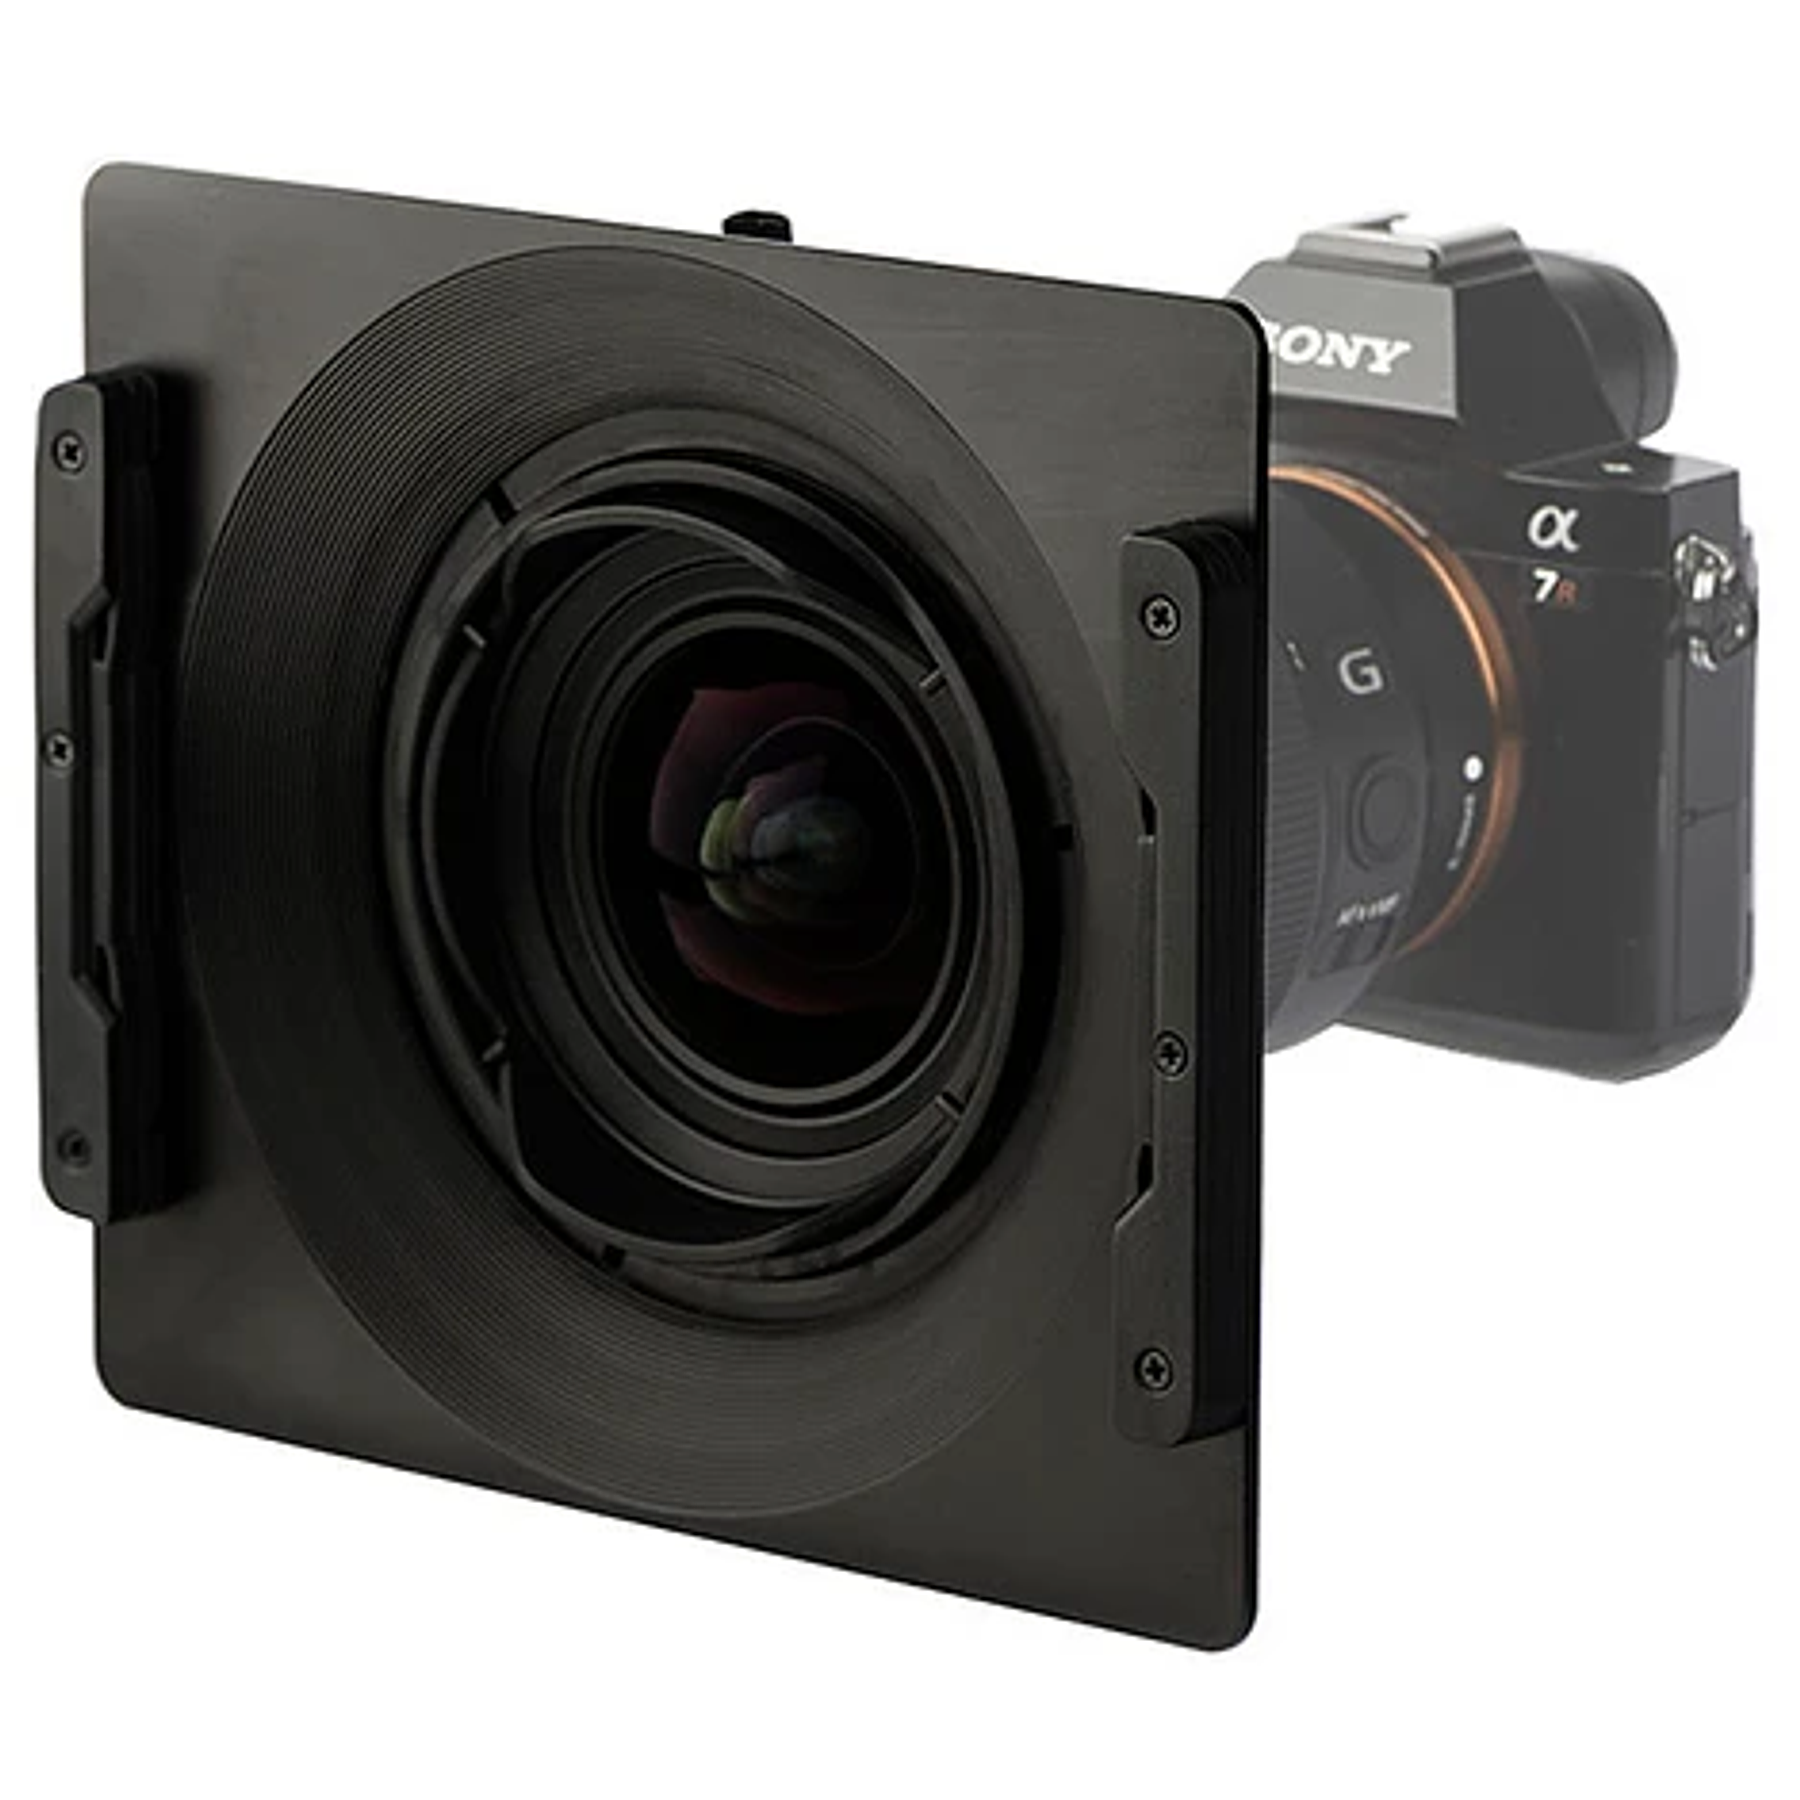 Portafiltros NiSi 150mm Q para Sony FE 12-24mm f4 G